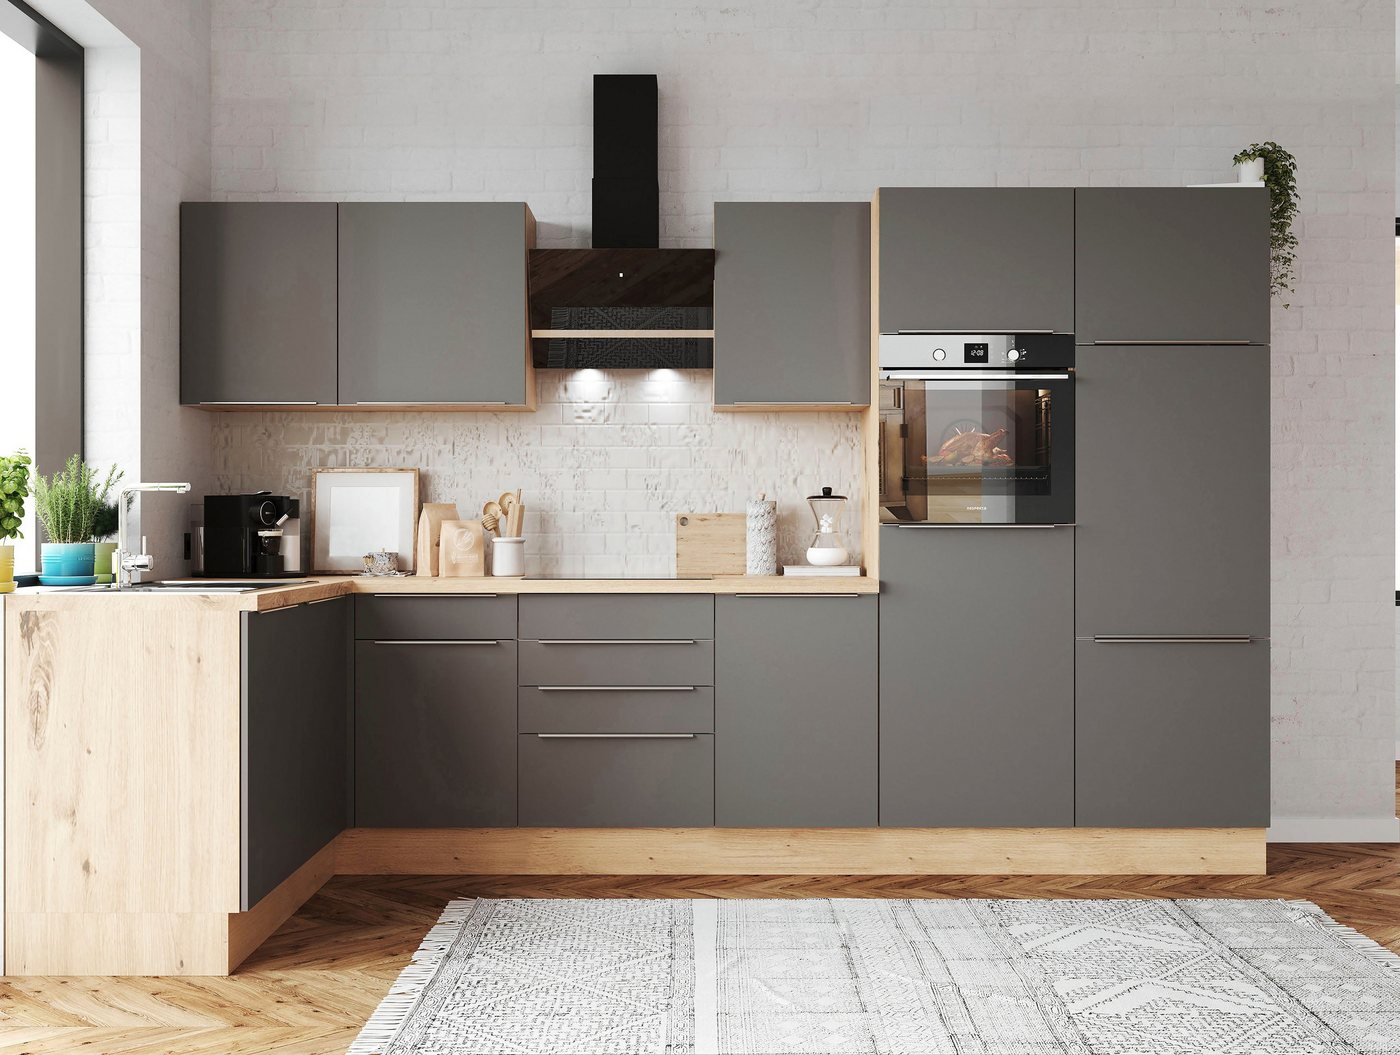 RESPEKTA Küchenzeile Safado aus der Serie Marleen, Breite 340 cm, mit Soft-Close, in exklusiver Konfiguration für OTTO von RESPEKTA